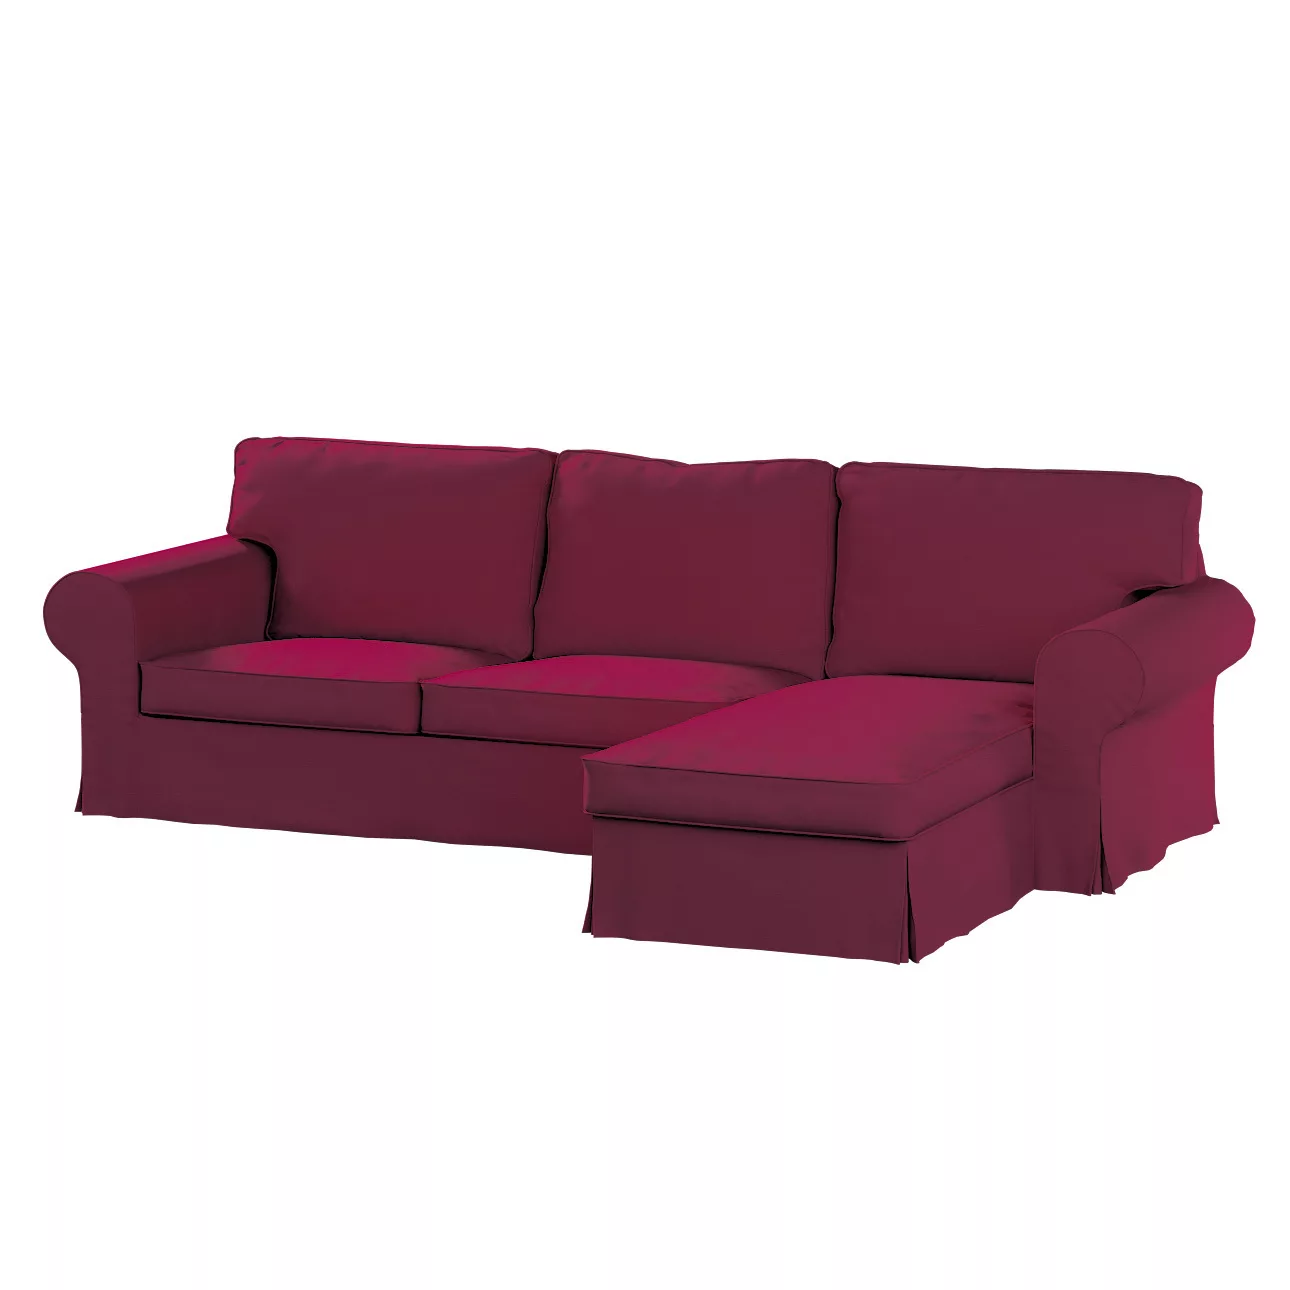 Bezug für Ektorp 2-Sitzer Sofa mit Recamiere, pflaume , Ektorp 2-Sitzer Sof günstig online kaufen